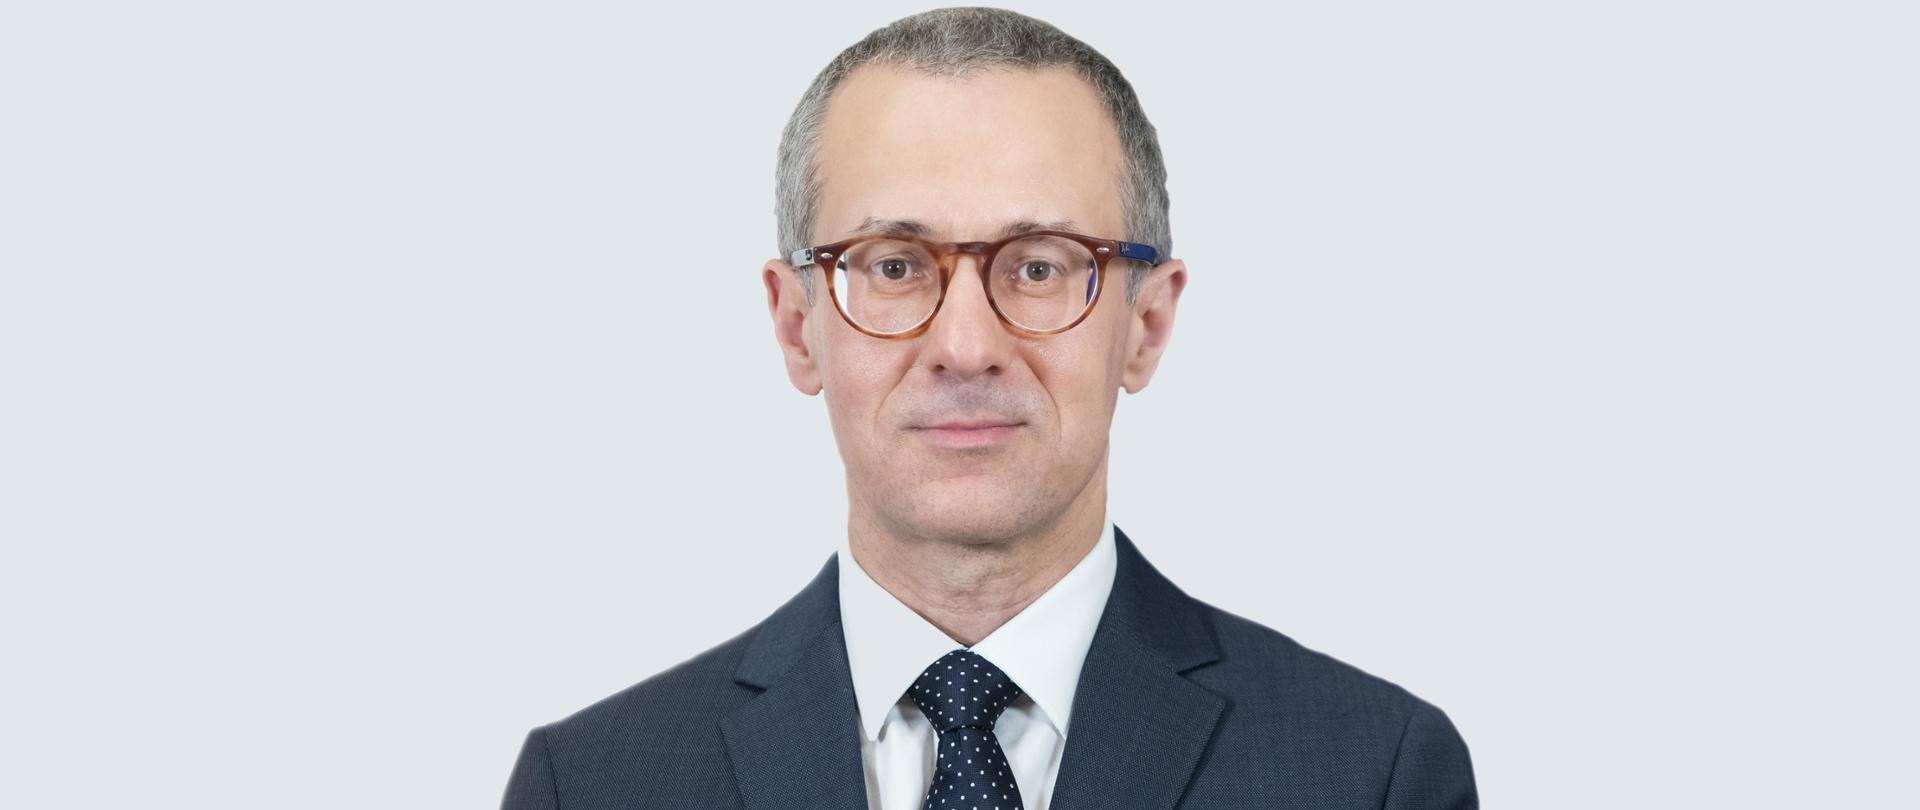 2020.06.29 Warszawa . Ambasador Przemysław Bobak .
Fot. Tymon Markowski / MSZ